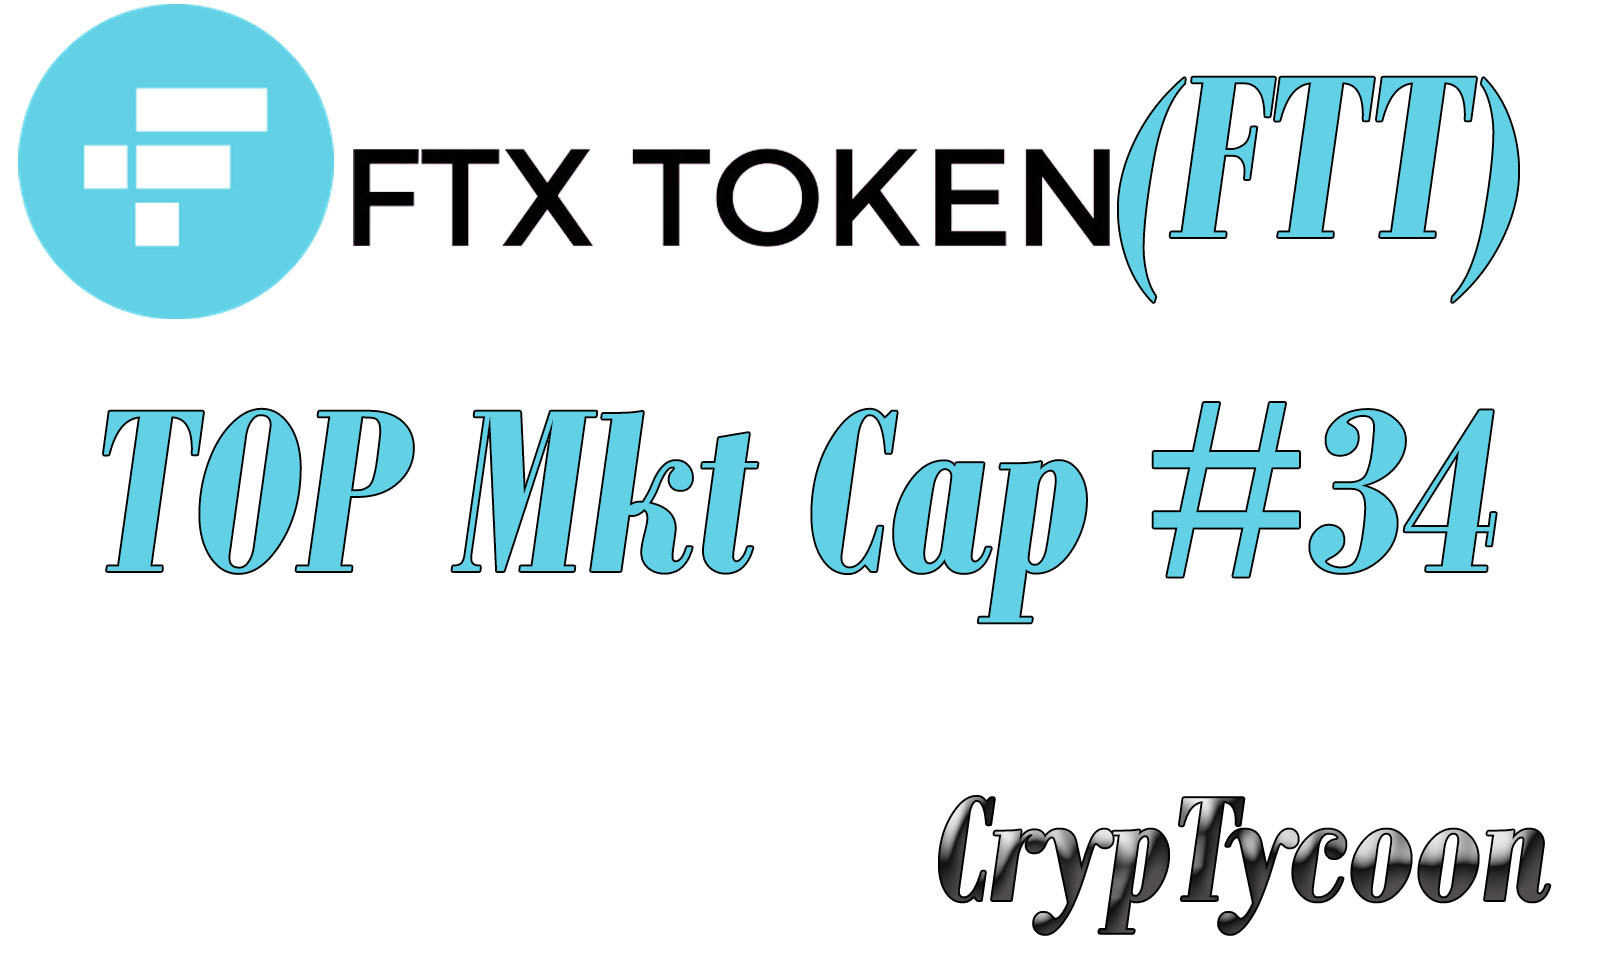 CT_FTT_MKT_CAP_2021.jpg